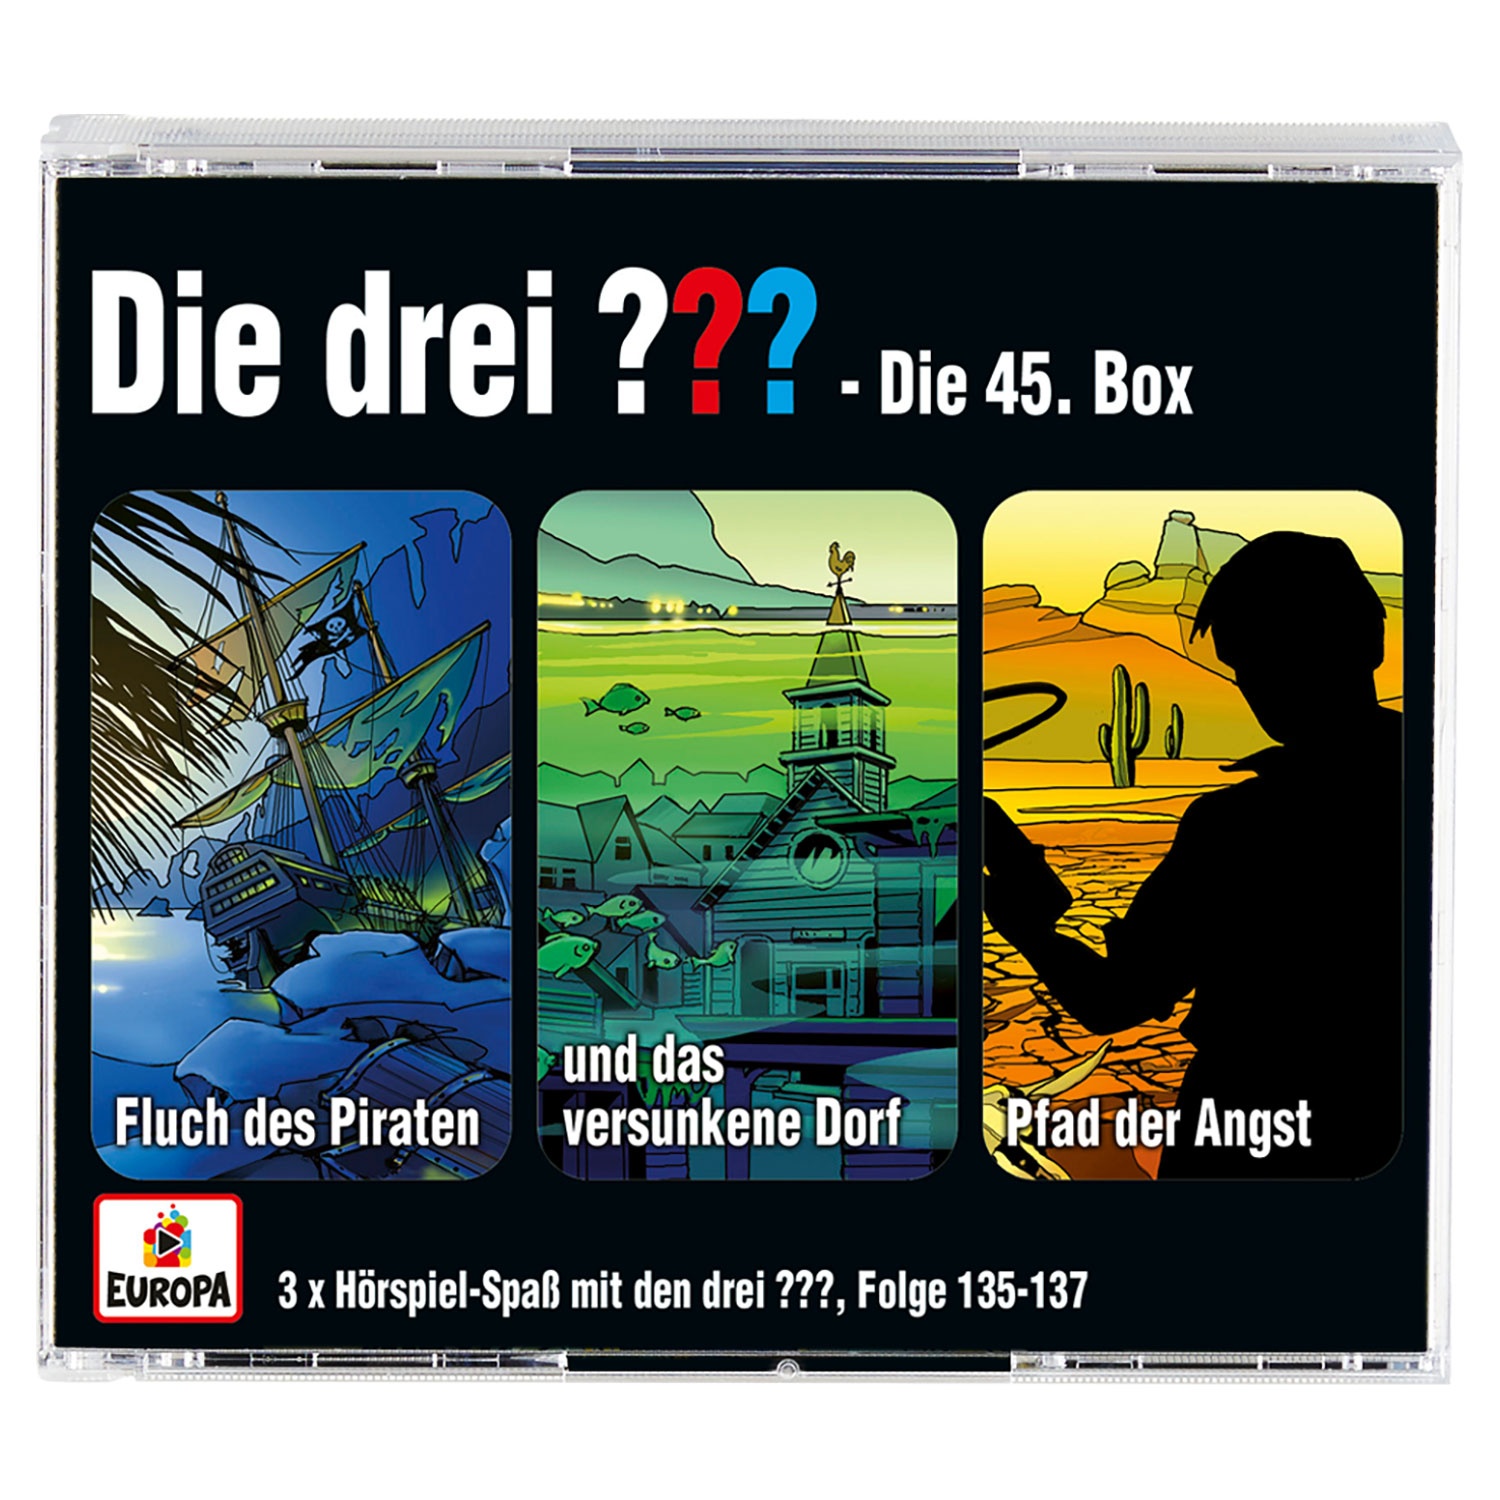 3er-CD-Box „Die drei ???/Kids“ oder „Die drei !!!“